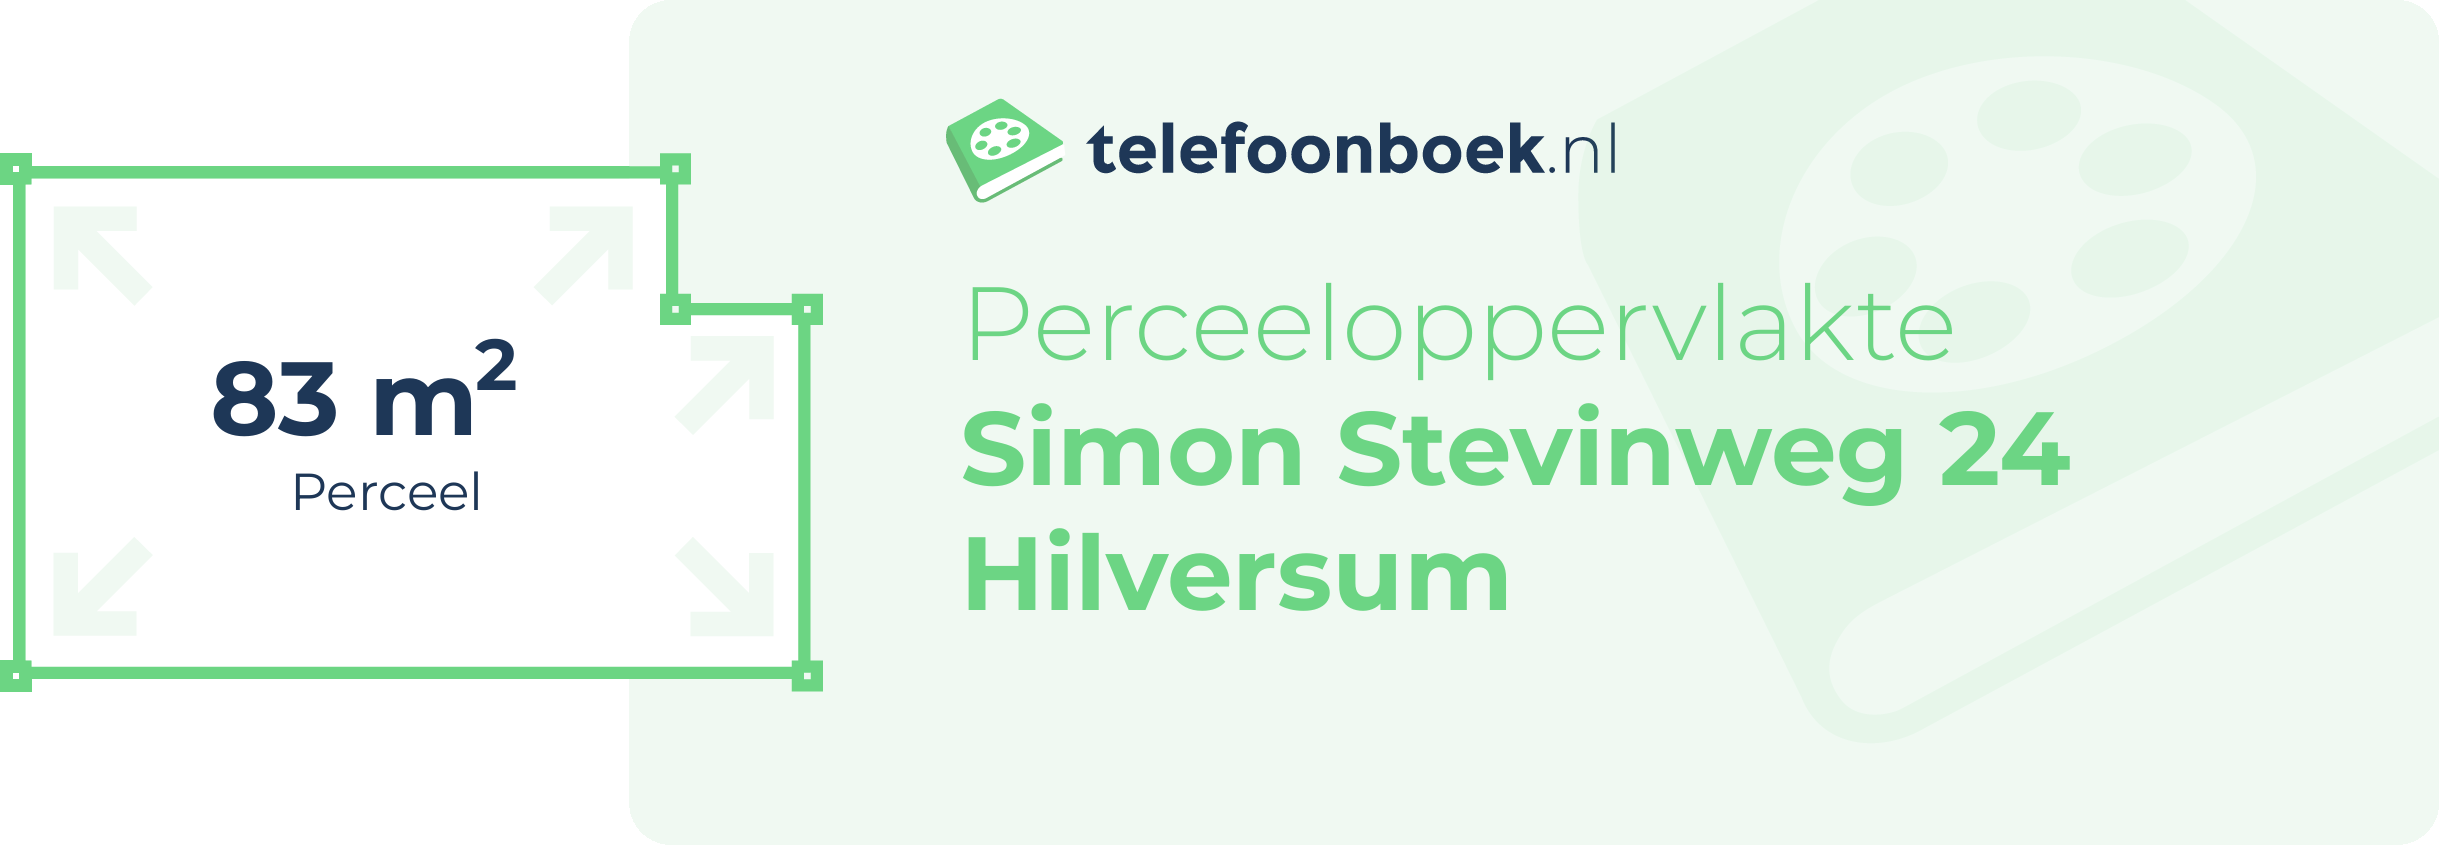 Perceeloppervlakte Simon Stevinweg 24 Hilversum